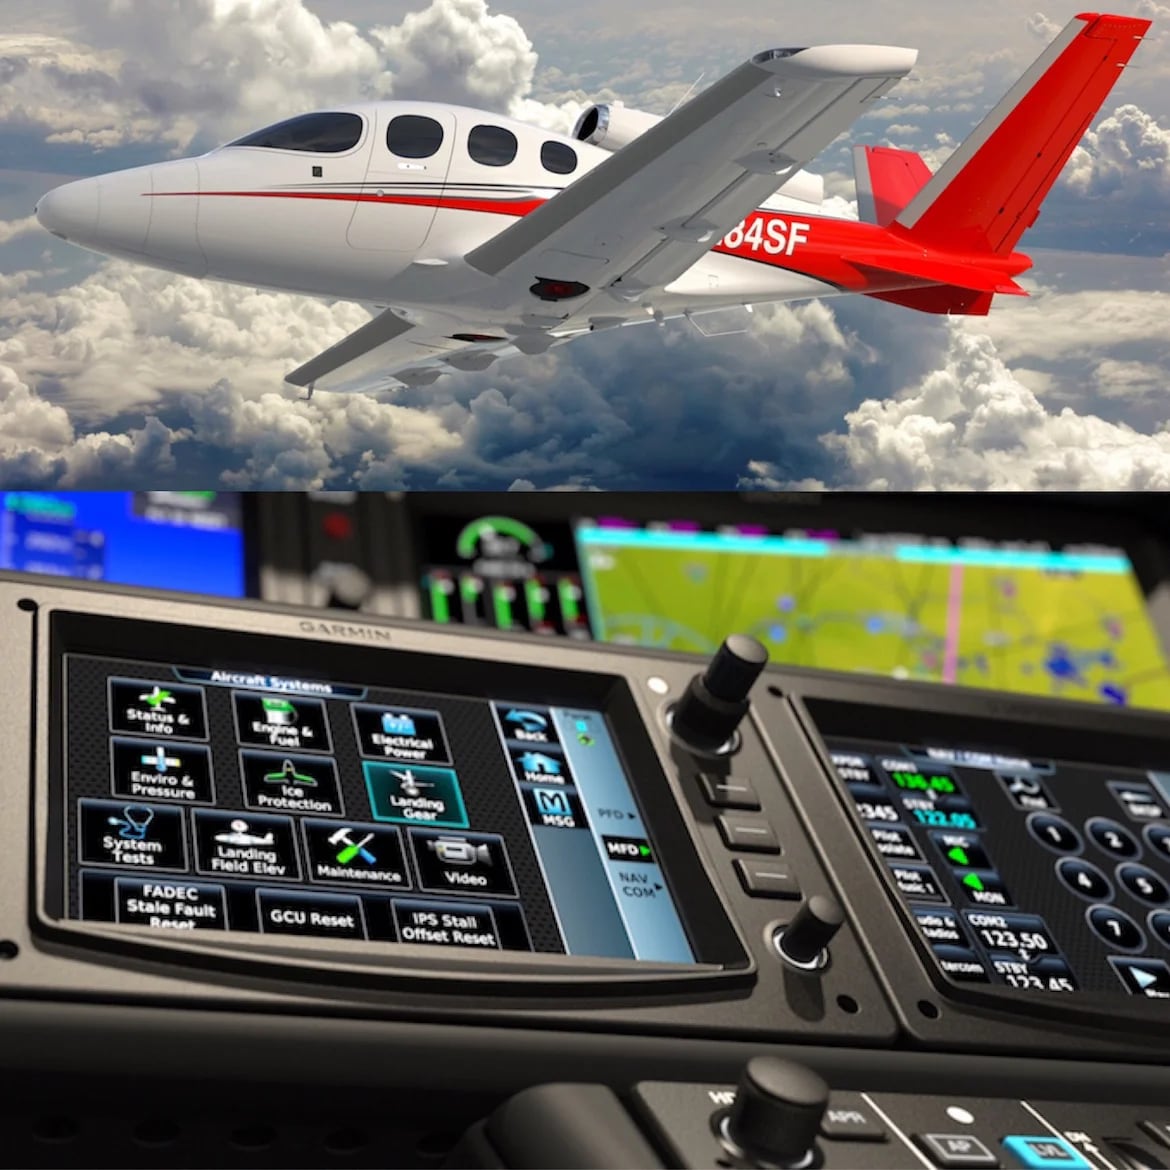 Diseñado para ser volado por su dueño y no por un piloto profesional, el Cirrus Vision SF50 ofrece la asistencia de un avanzado sistema inteligente denominado “Cirrus Perspective Touch” apalancado en una plataforma Garmin G3000